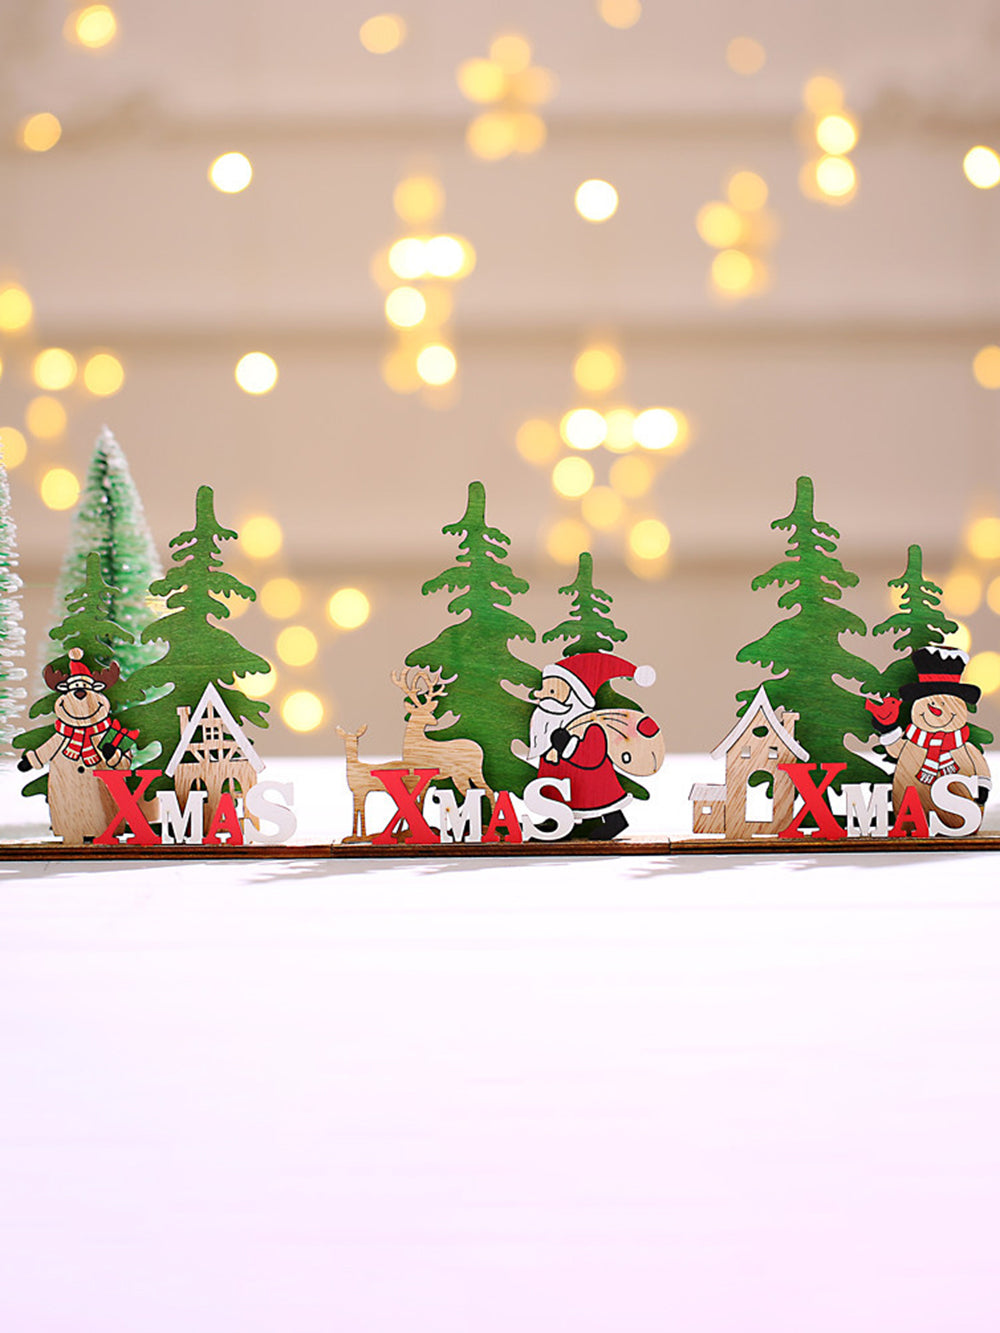 Julepynt DIY farverige bordpynt i træ